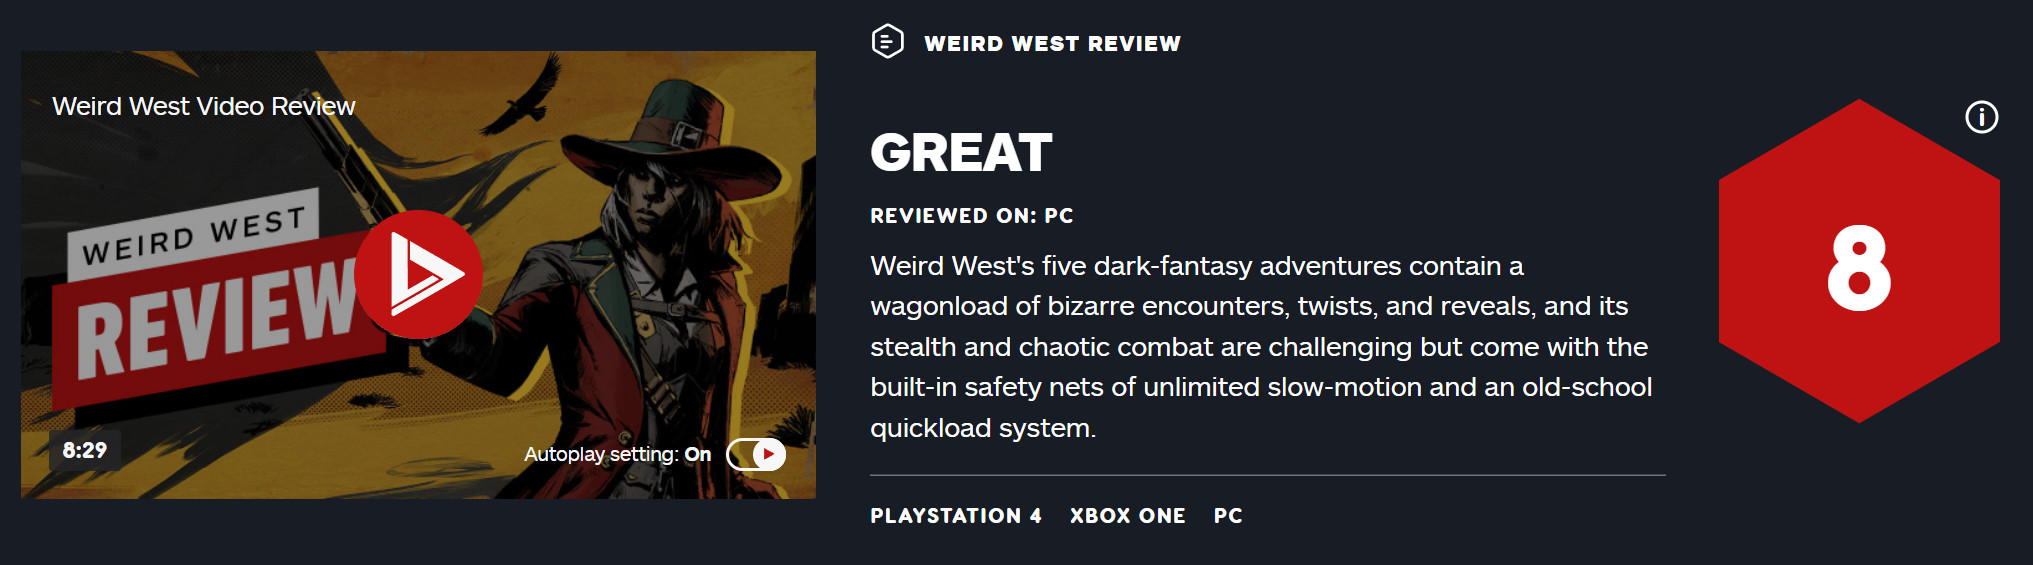 《诡异西部》首批媒体评分解禁 IGN给出8分好评